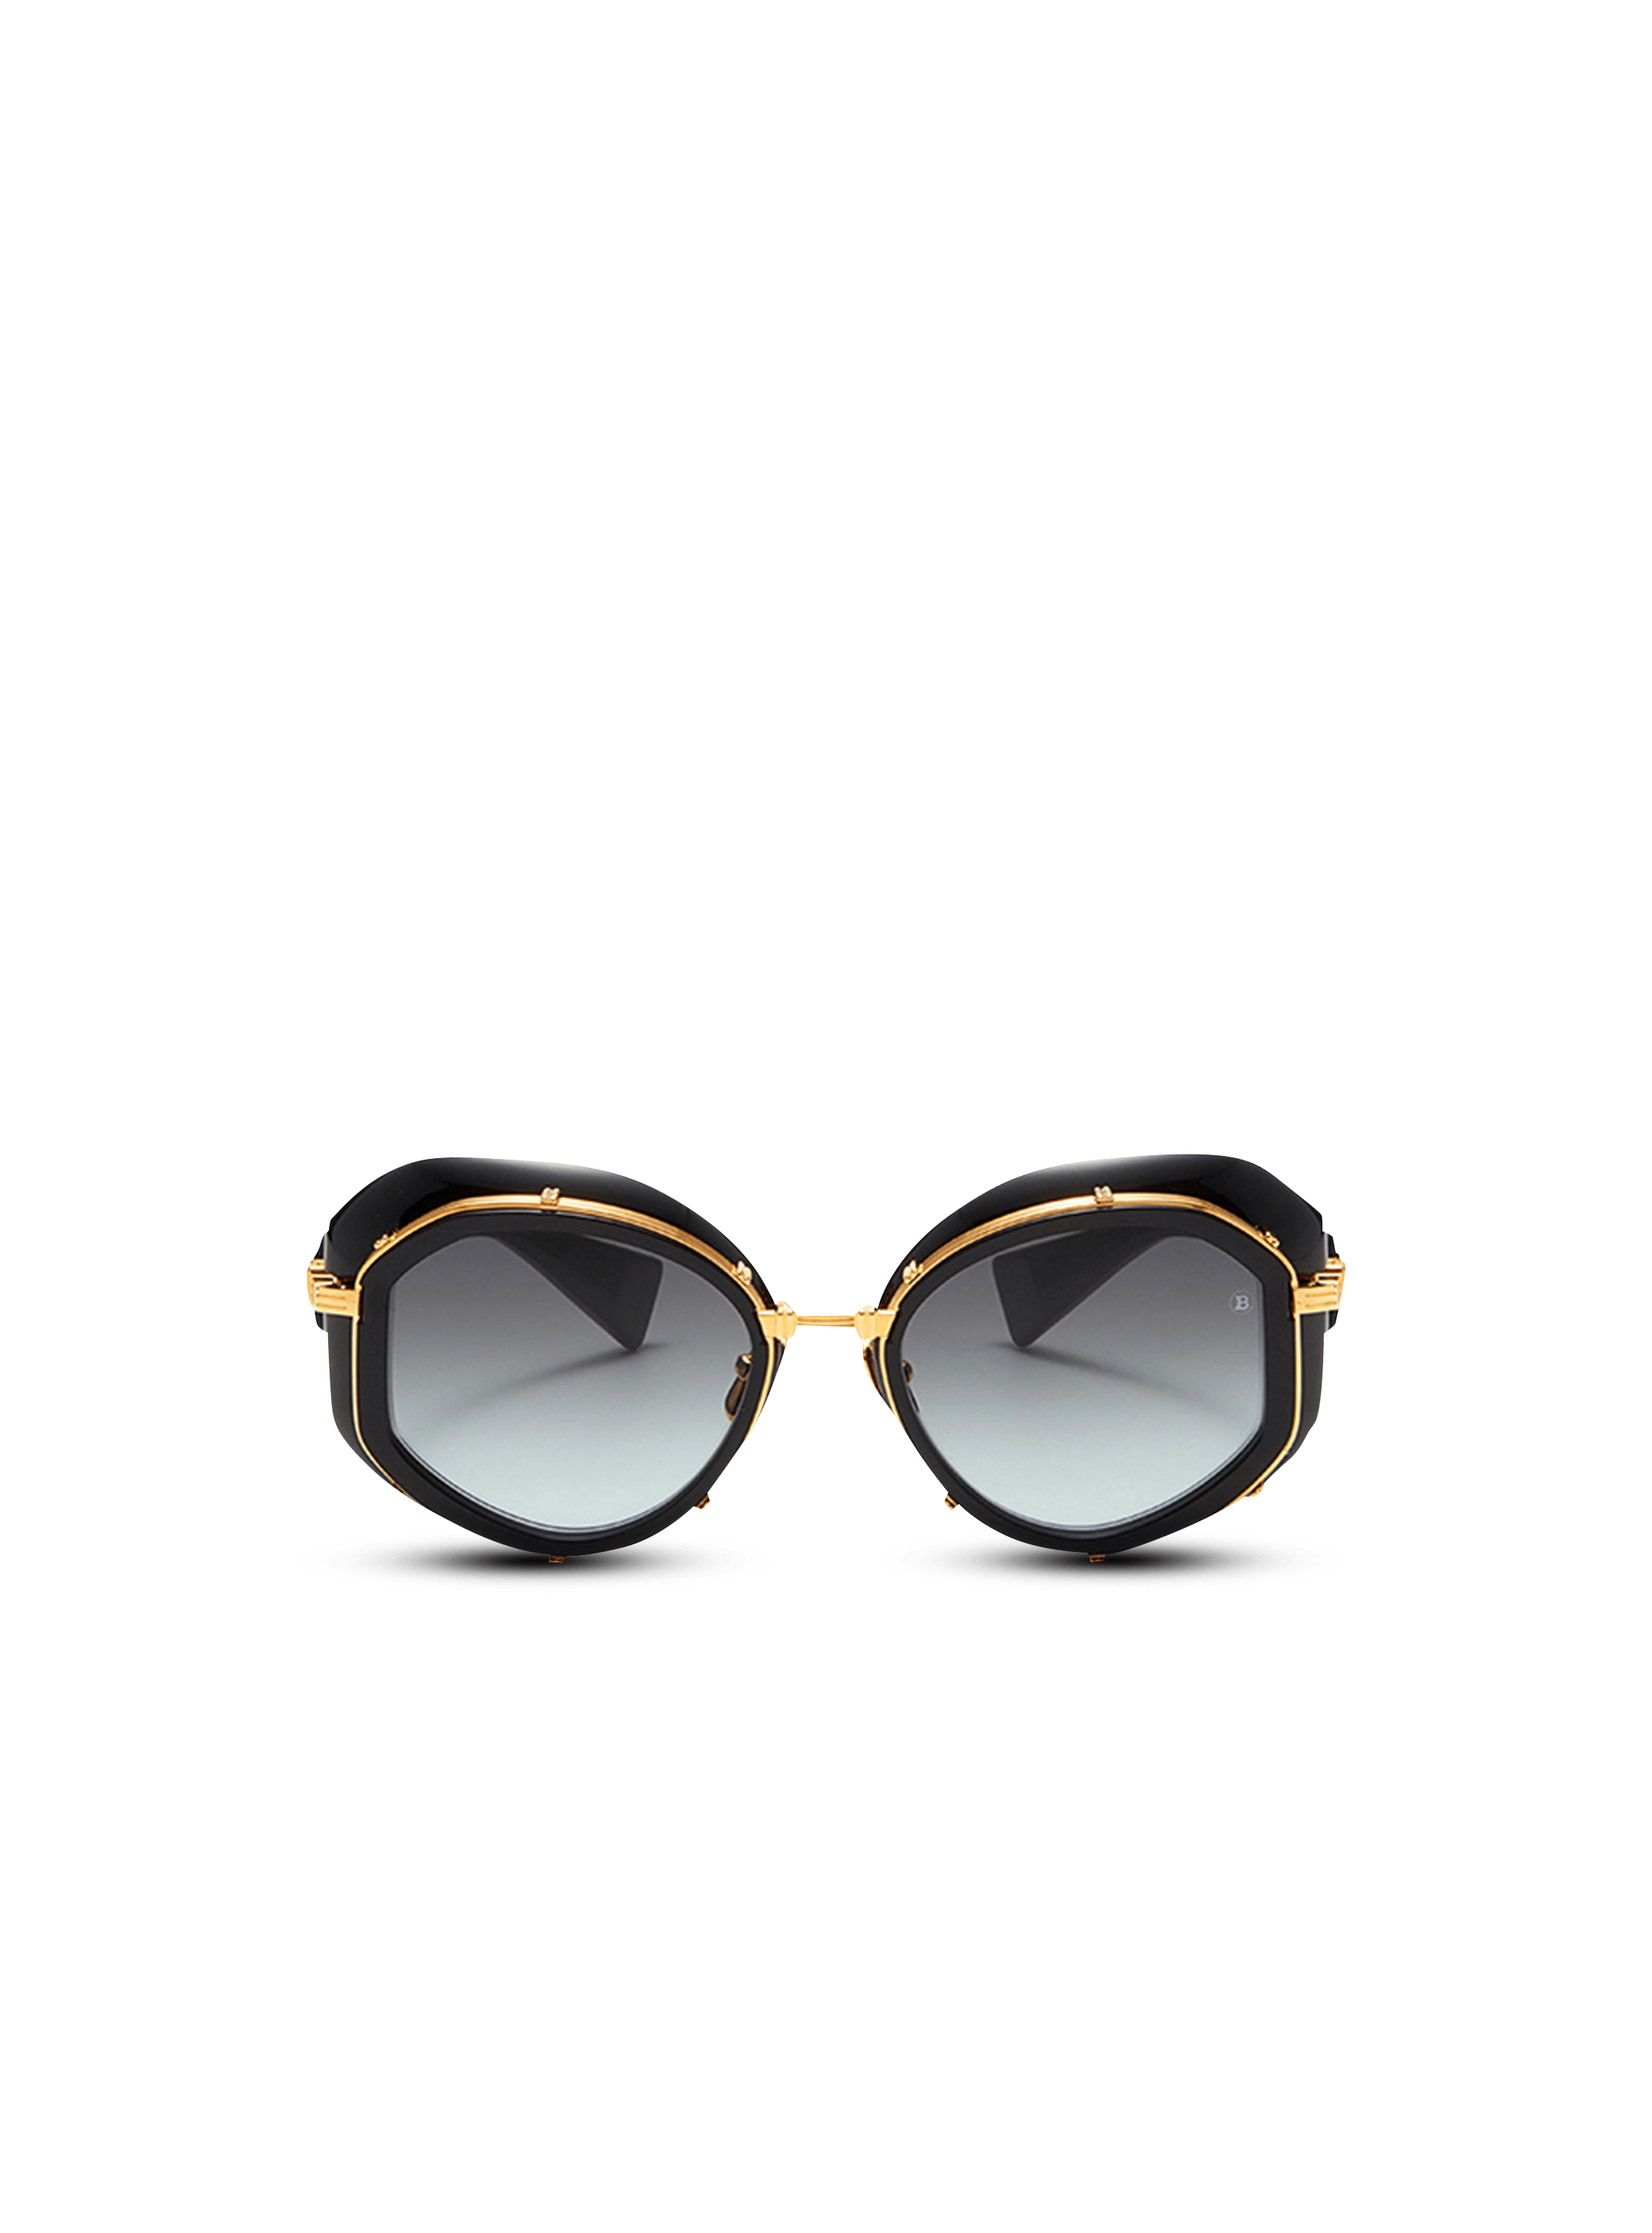 Brigitte sunglasses